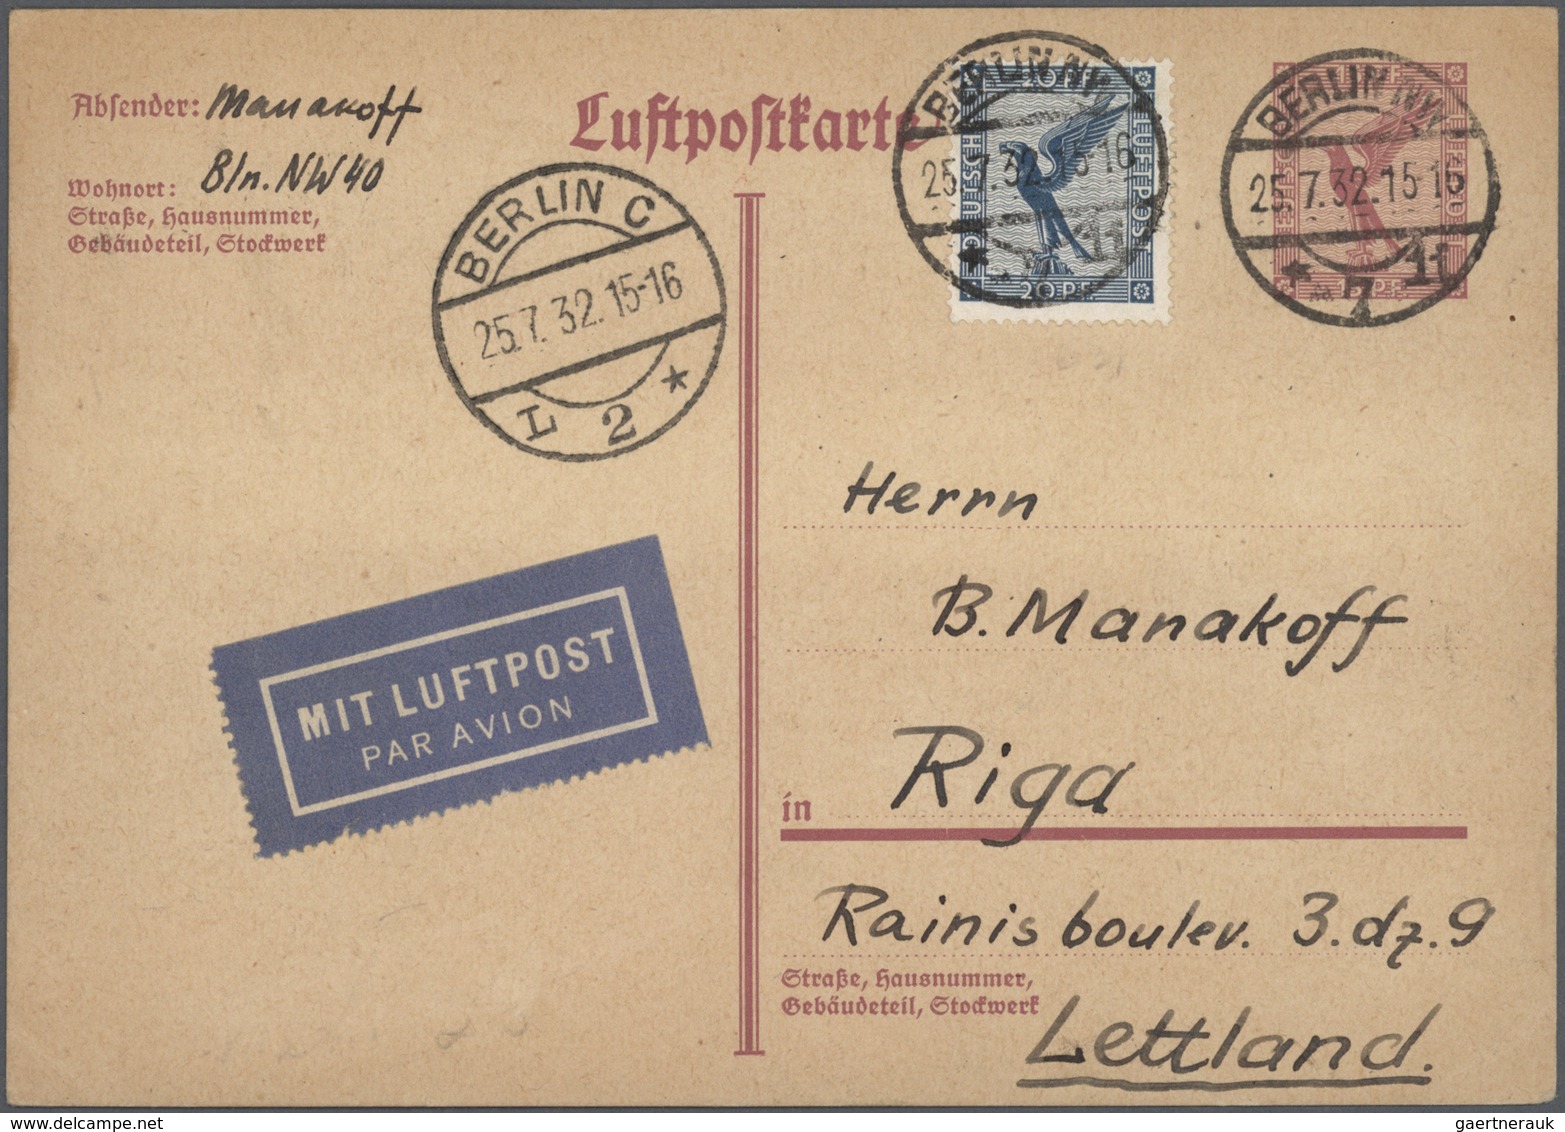 31760 Deutsches Reich - Ganzsachen: 1875/1932, umfangreiche, ungebrauchte und gebrauchte Ganzsachenkarten-